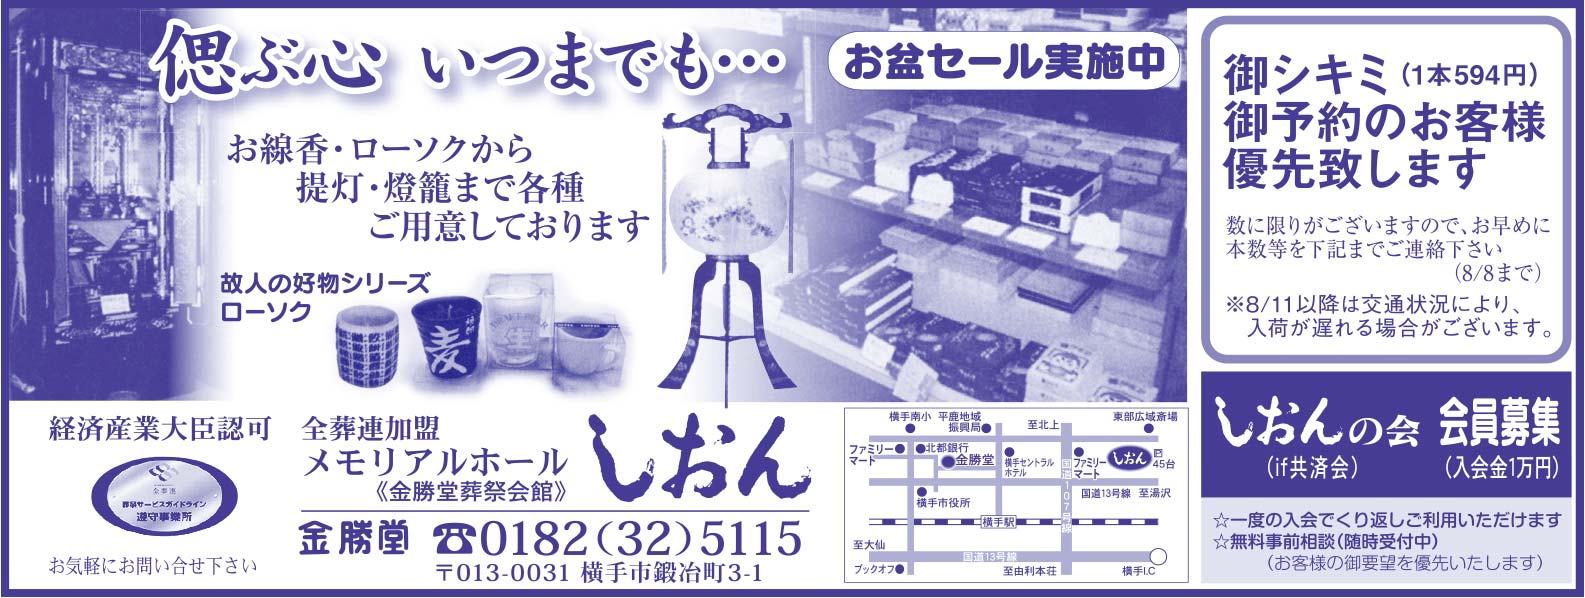 メモリアルホール しおん様の2022新春号 横手版広告